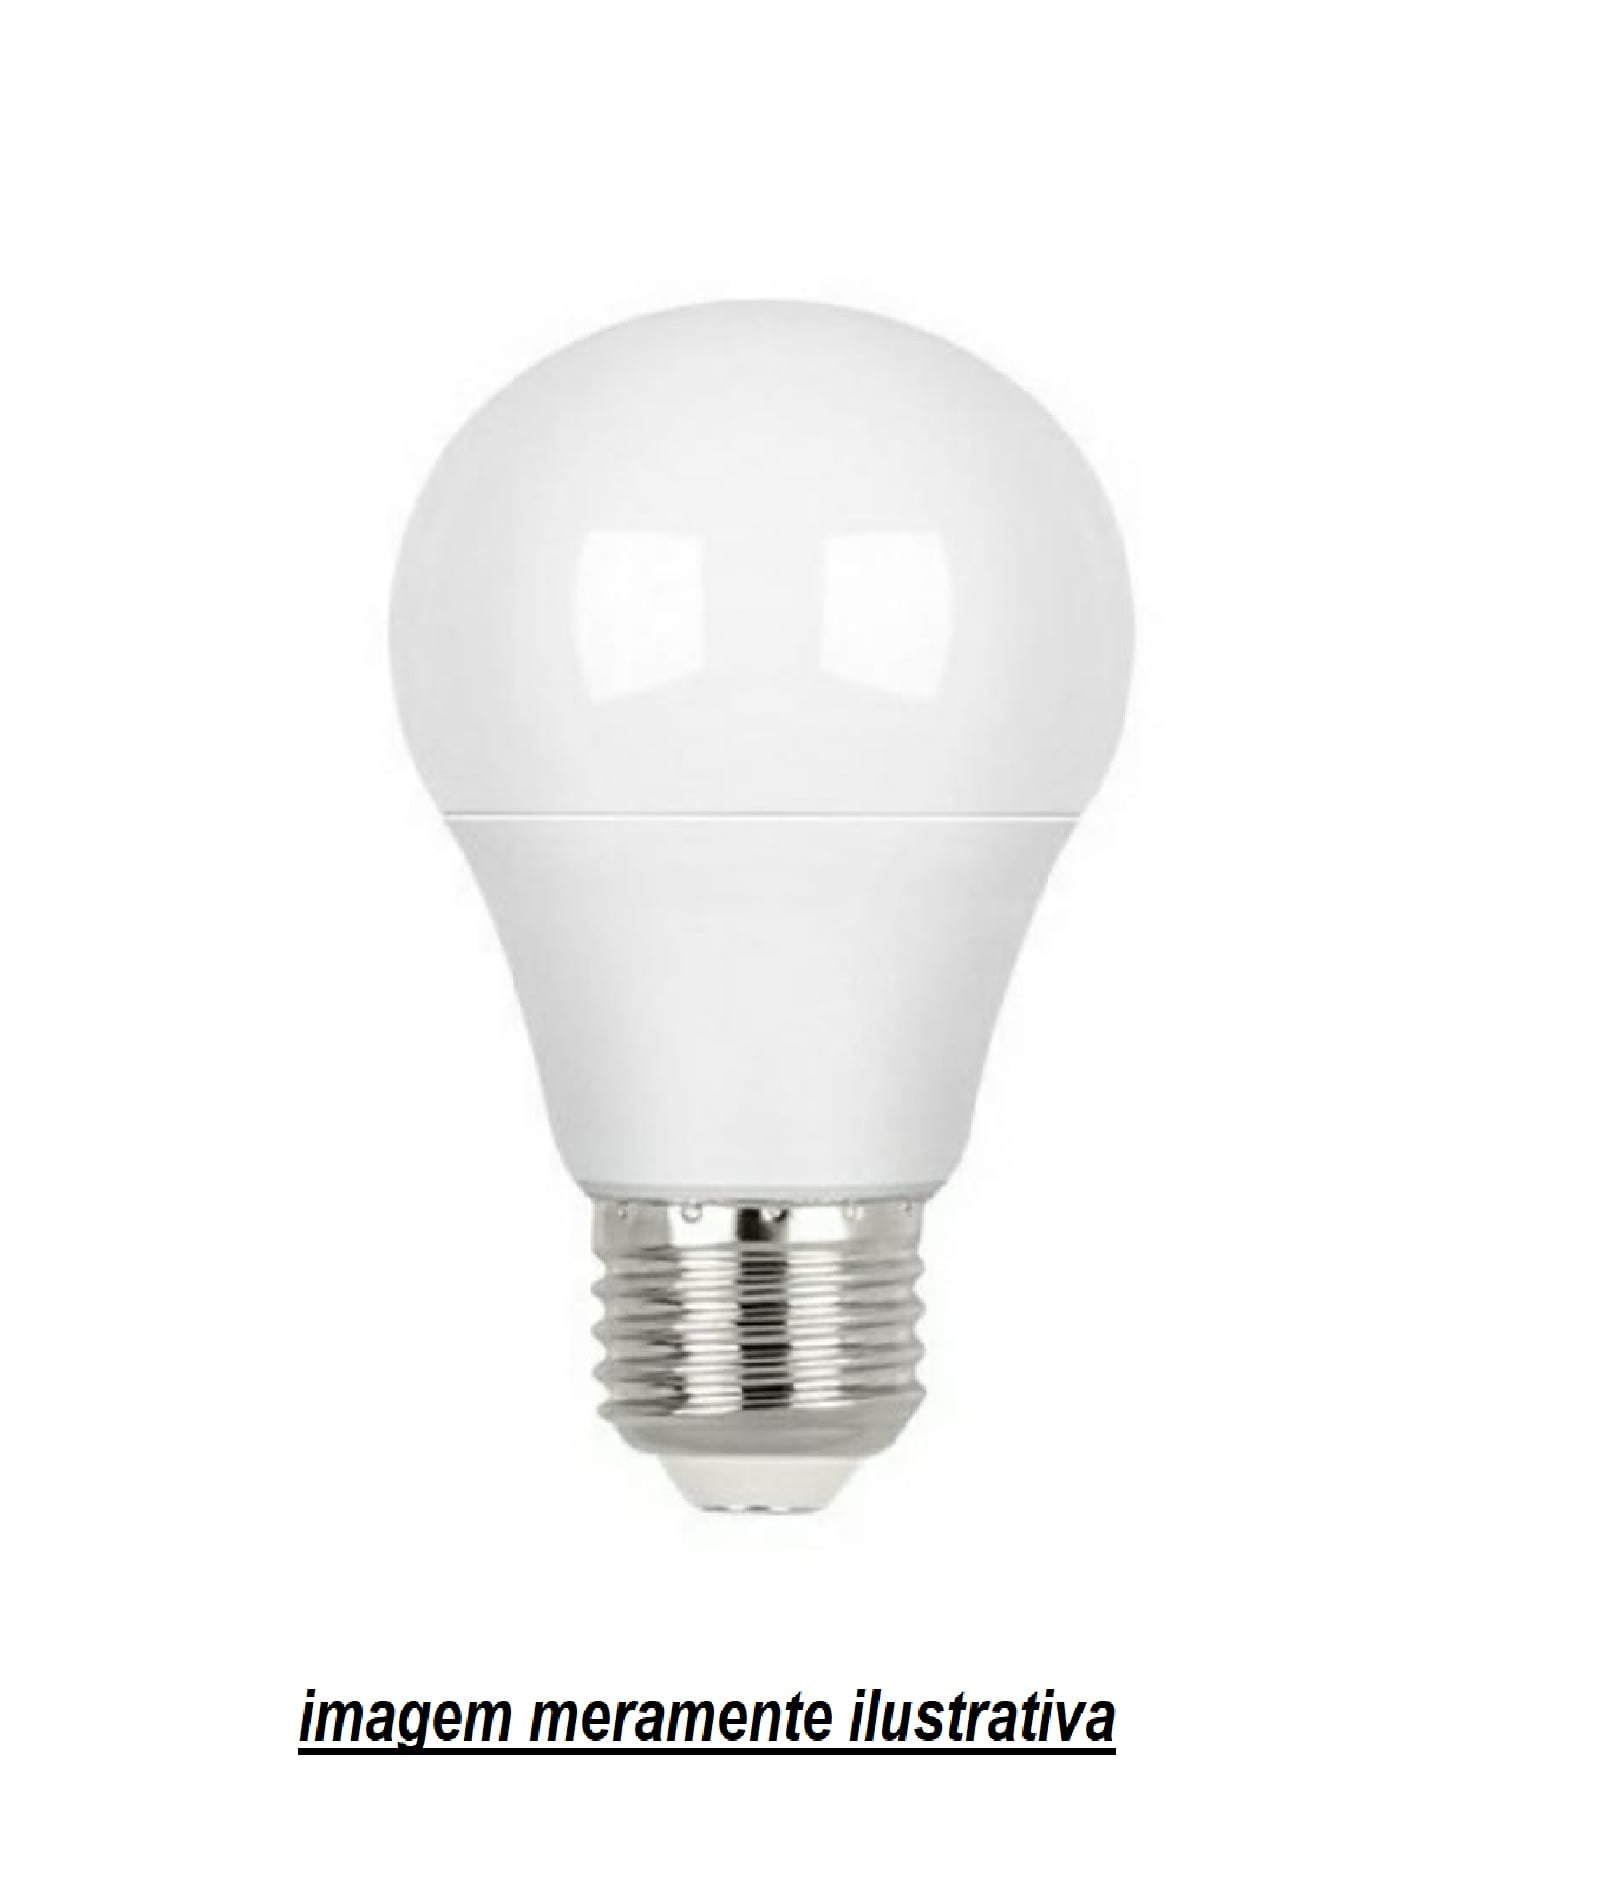 20 unidades de Lâmpadas  Bulbo De LED 4.8W Bivolt Econômica 6500K Branco Frio E27